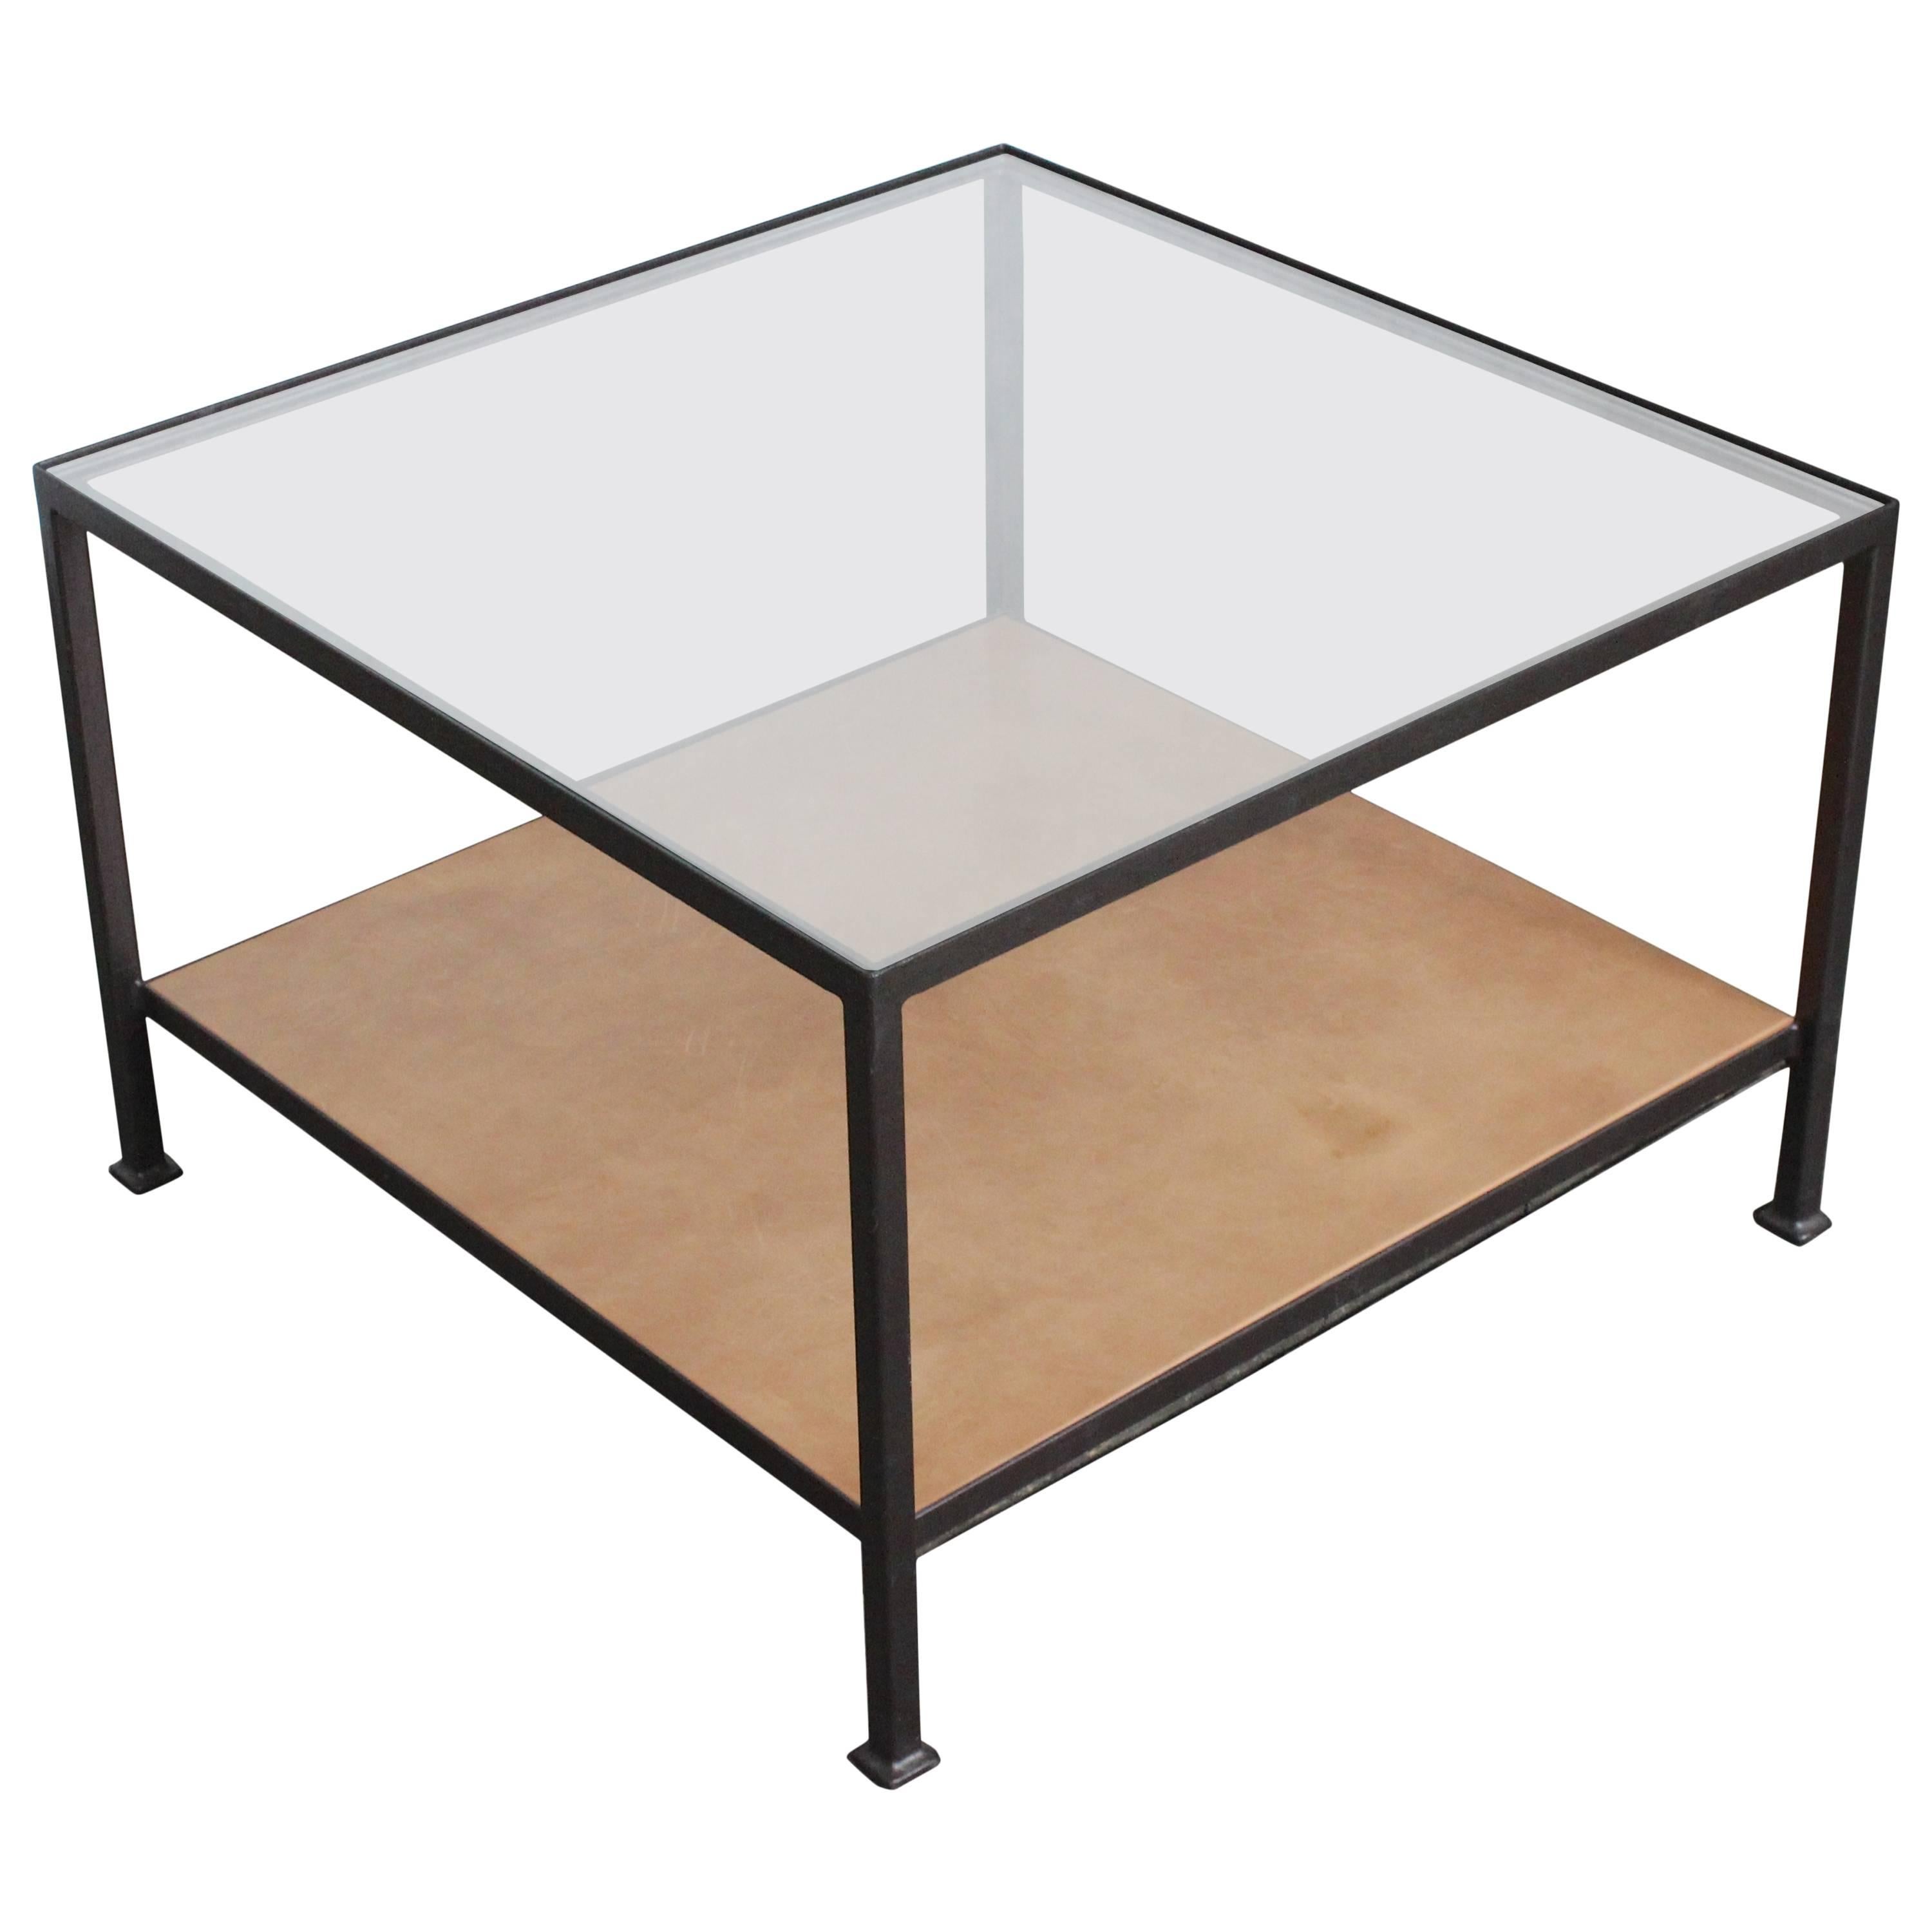 Table basse Marcelo avec plateau en verre transparent